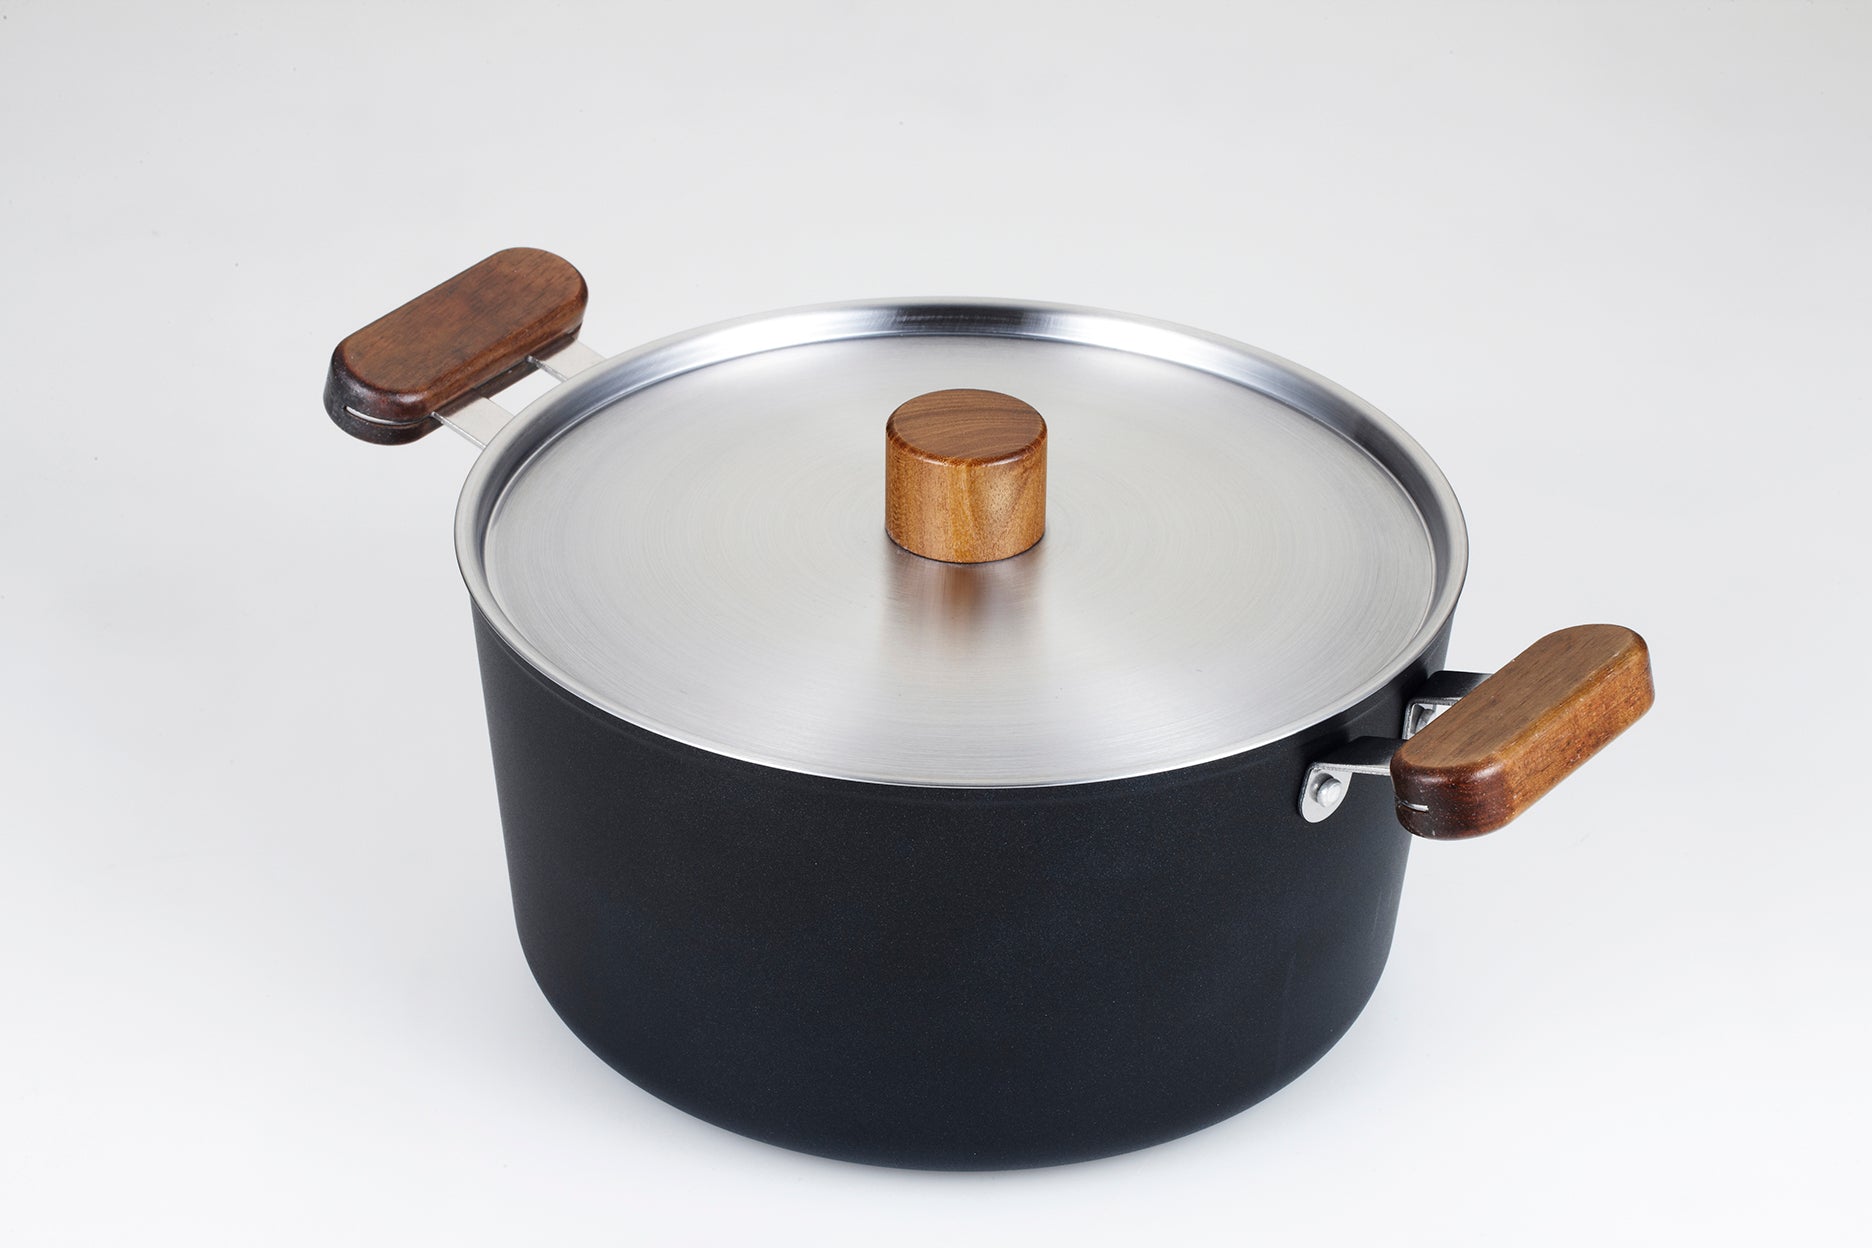 韓國製 Ecoramics OSLO 一體成型鋁版不黏湯鍋24 cm (附蓋)